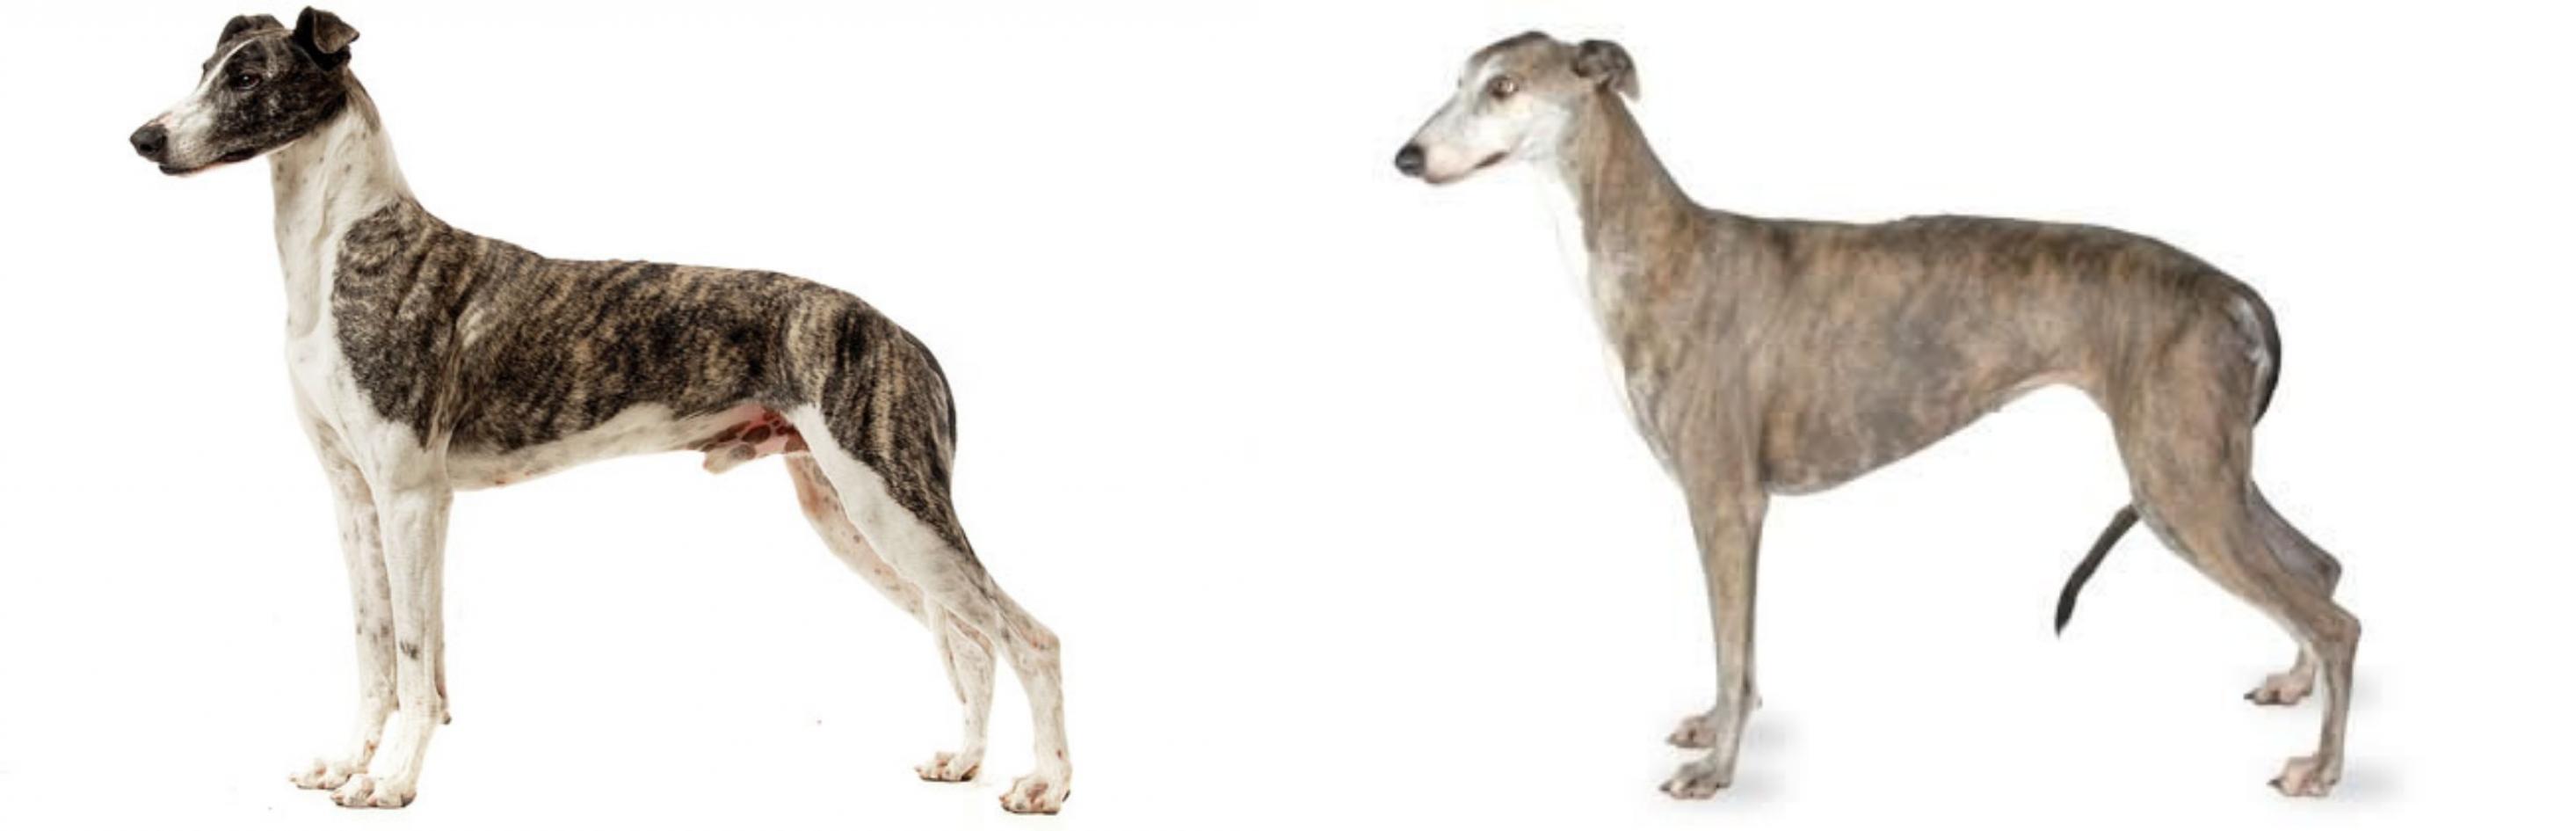 Magyar Agar Vs Greyhound Breed Comparison Mydogbreeds